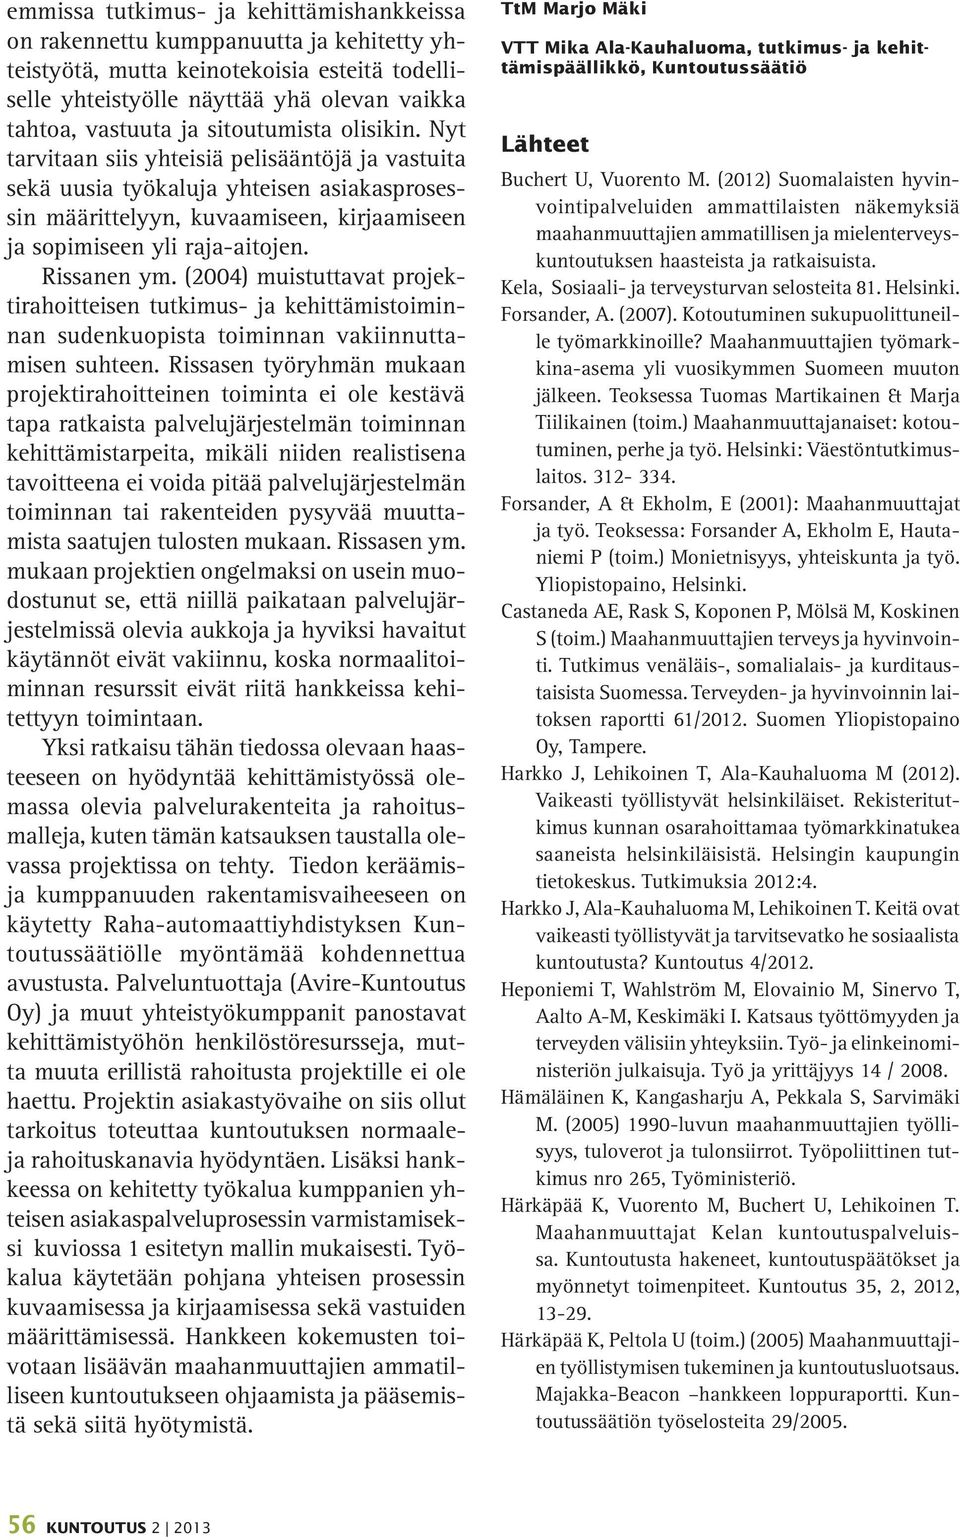 Rissanen ym. (2004) muistuttavat projektirahoitteisen tutkimus- ja kehittämistoiminnan sudenkuopista toiminnan vakiinnuttamisen suhteen.